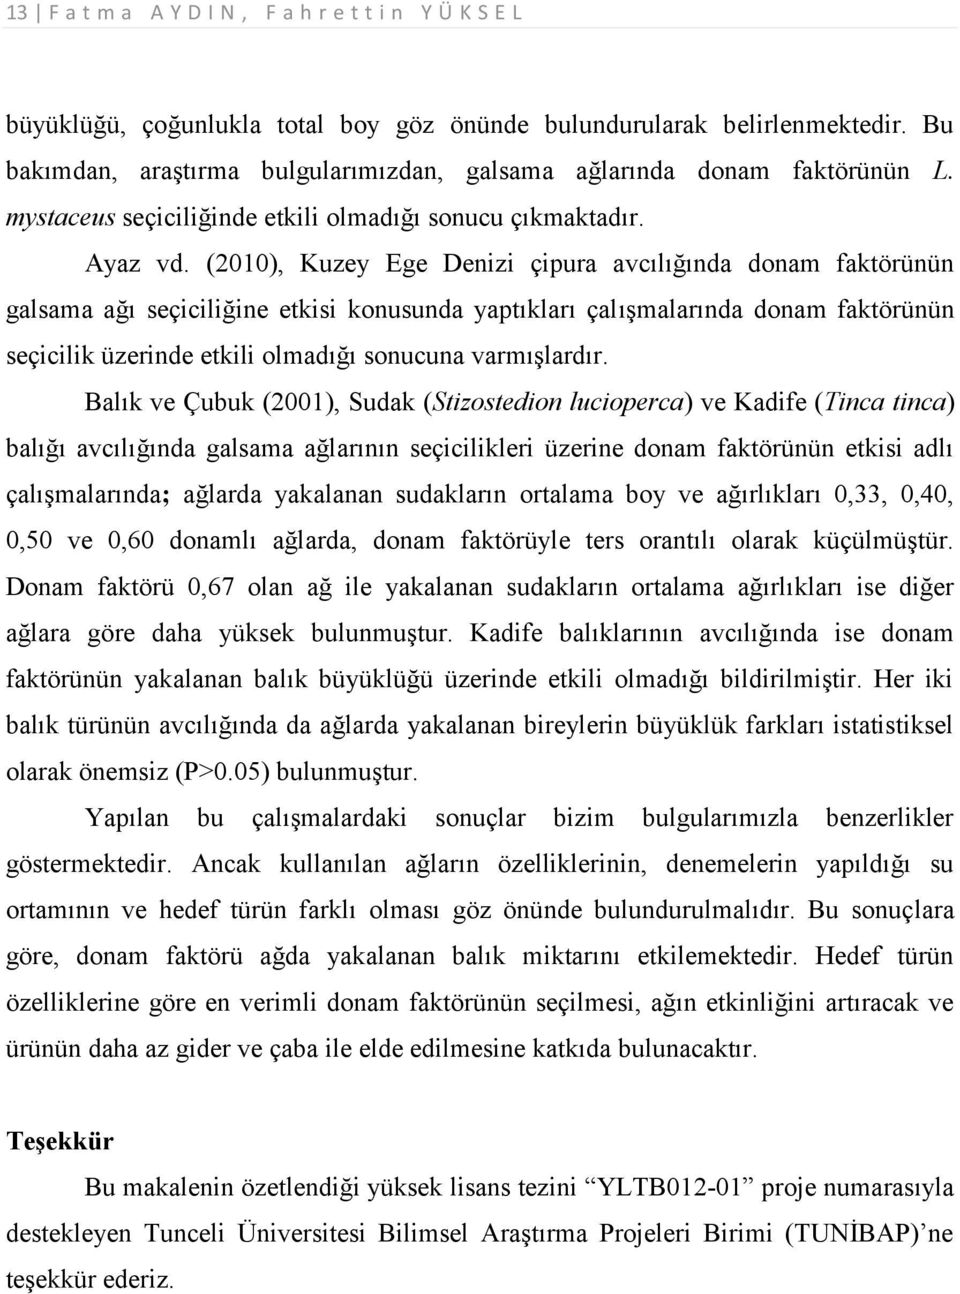 (2010), Kuzey Ege Denizi çipura avcılığında donam faktörünün galsama ağı seçiciliğine etkisi konusunda yaptıkları çalışmalarında donam faktörünün seçicilik üzerinde etkili olmadığı sonucuna